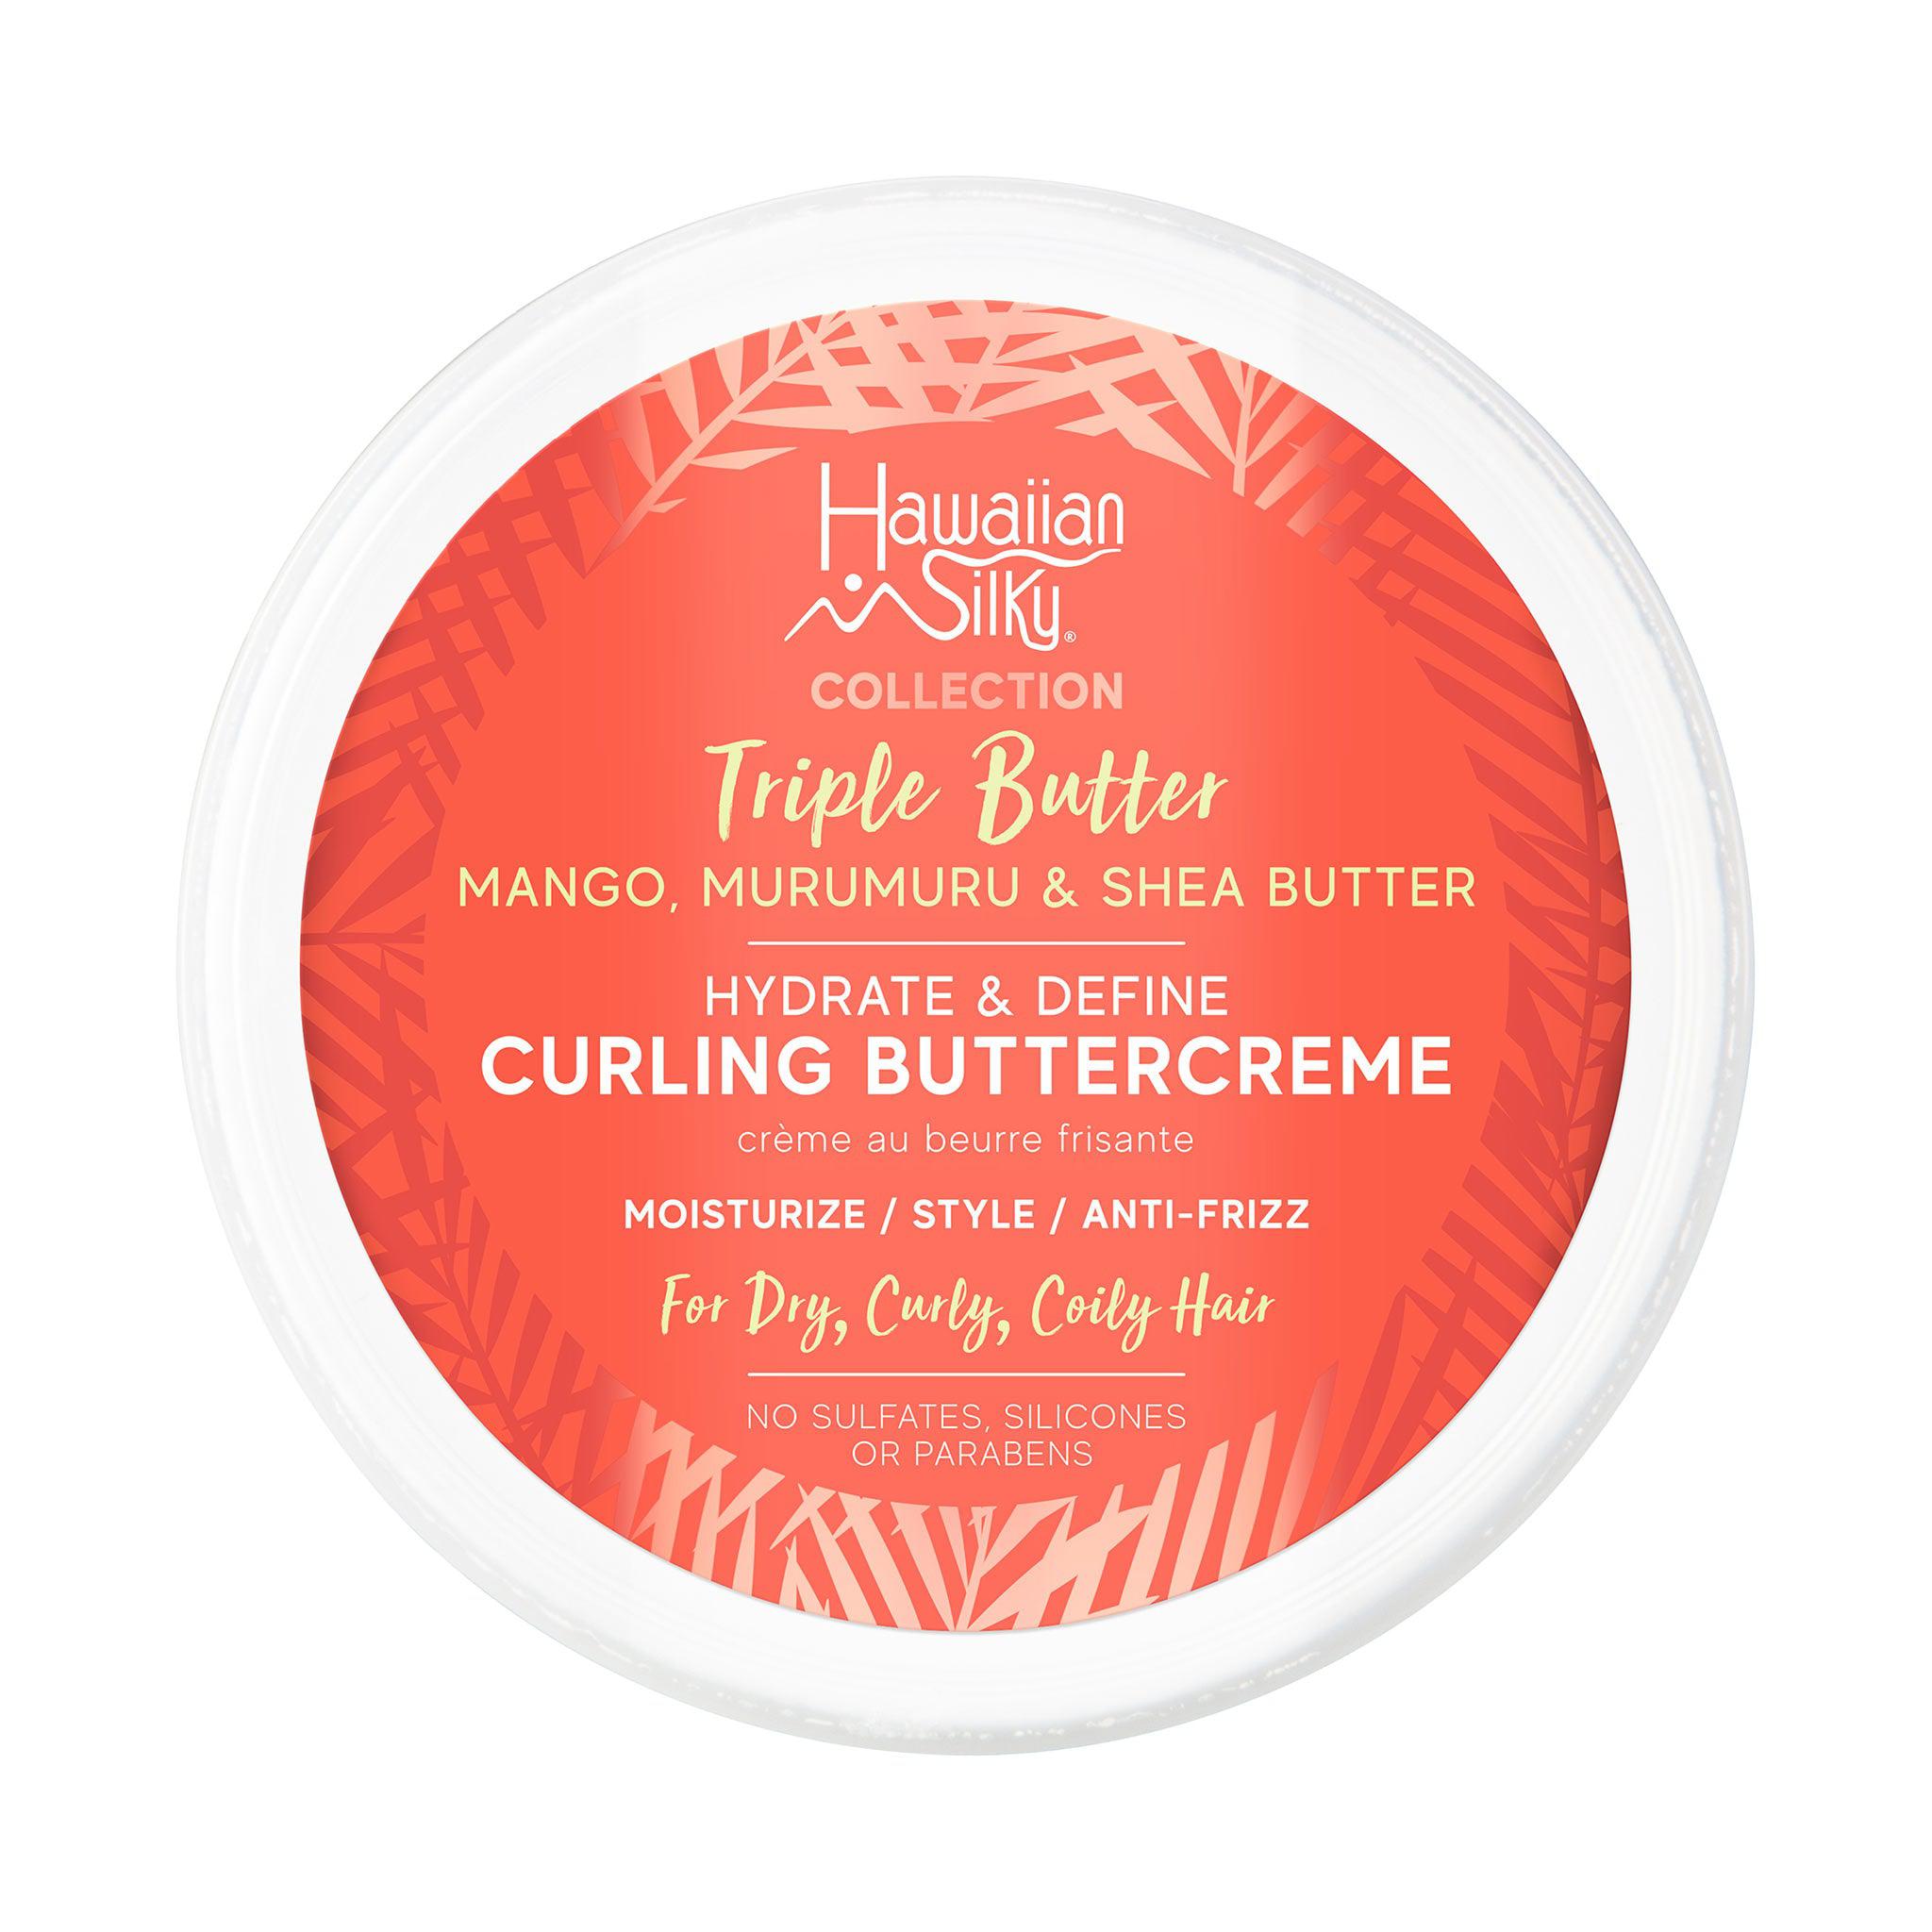 Hawaiian Silky Triple Butter Hydrate & Define Curling Buttercreme Top